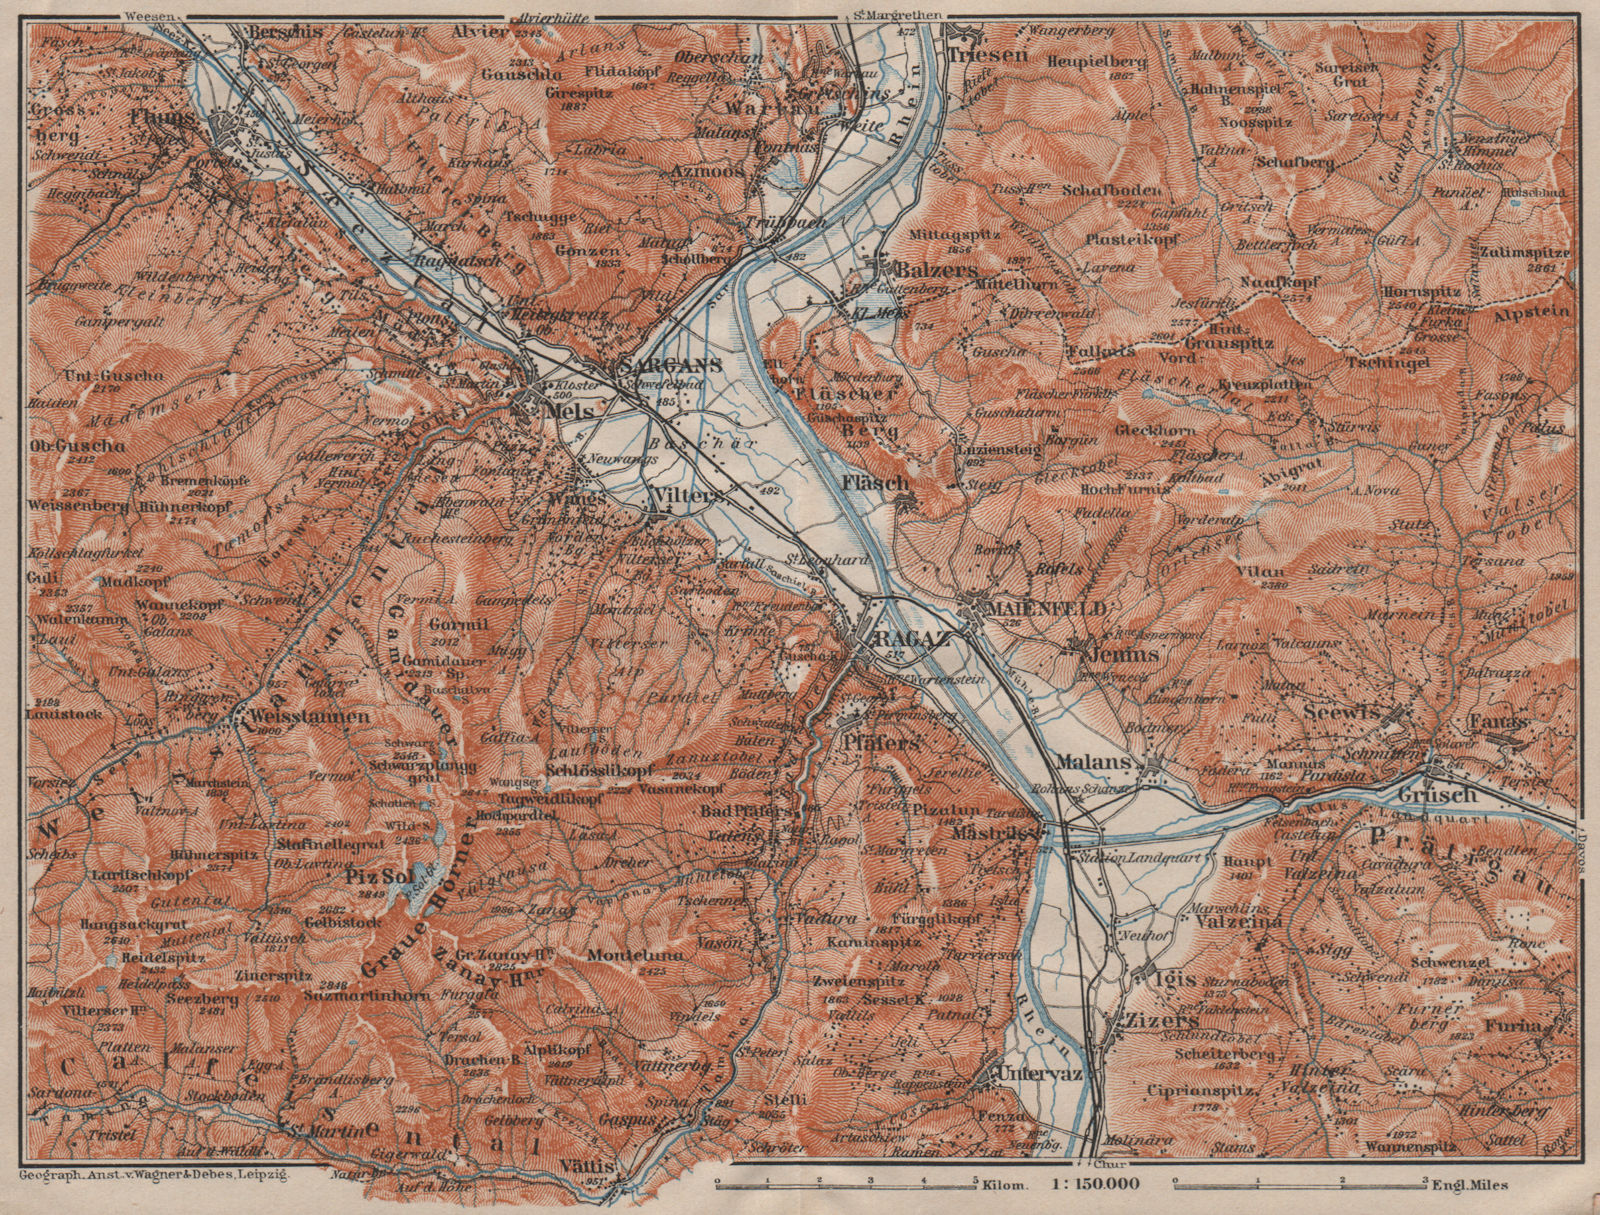 BAD RAGAZ. Malbun Flums Wangs Pizol Sargans Grusch Malans Maienfeld 1911 map